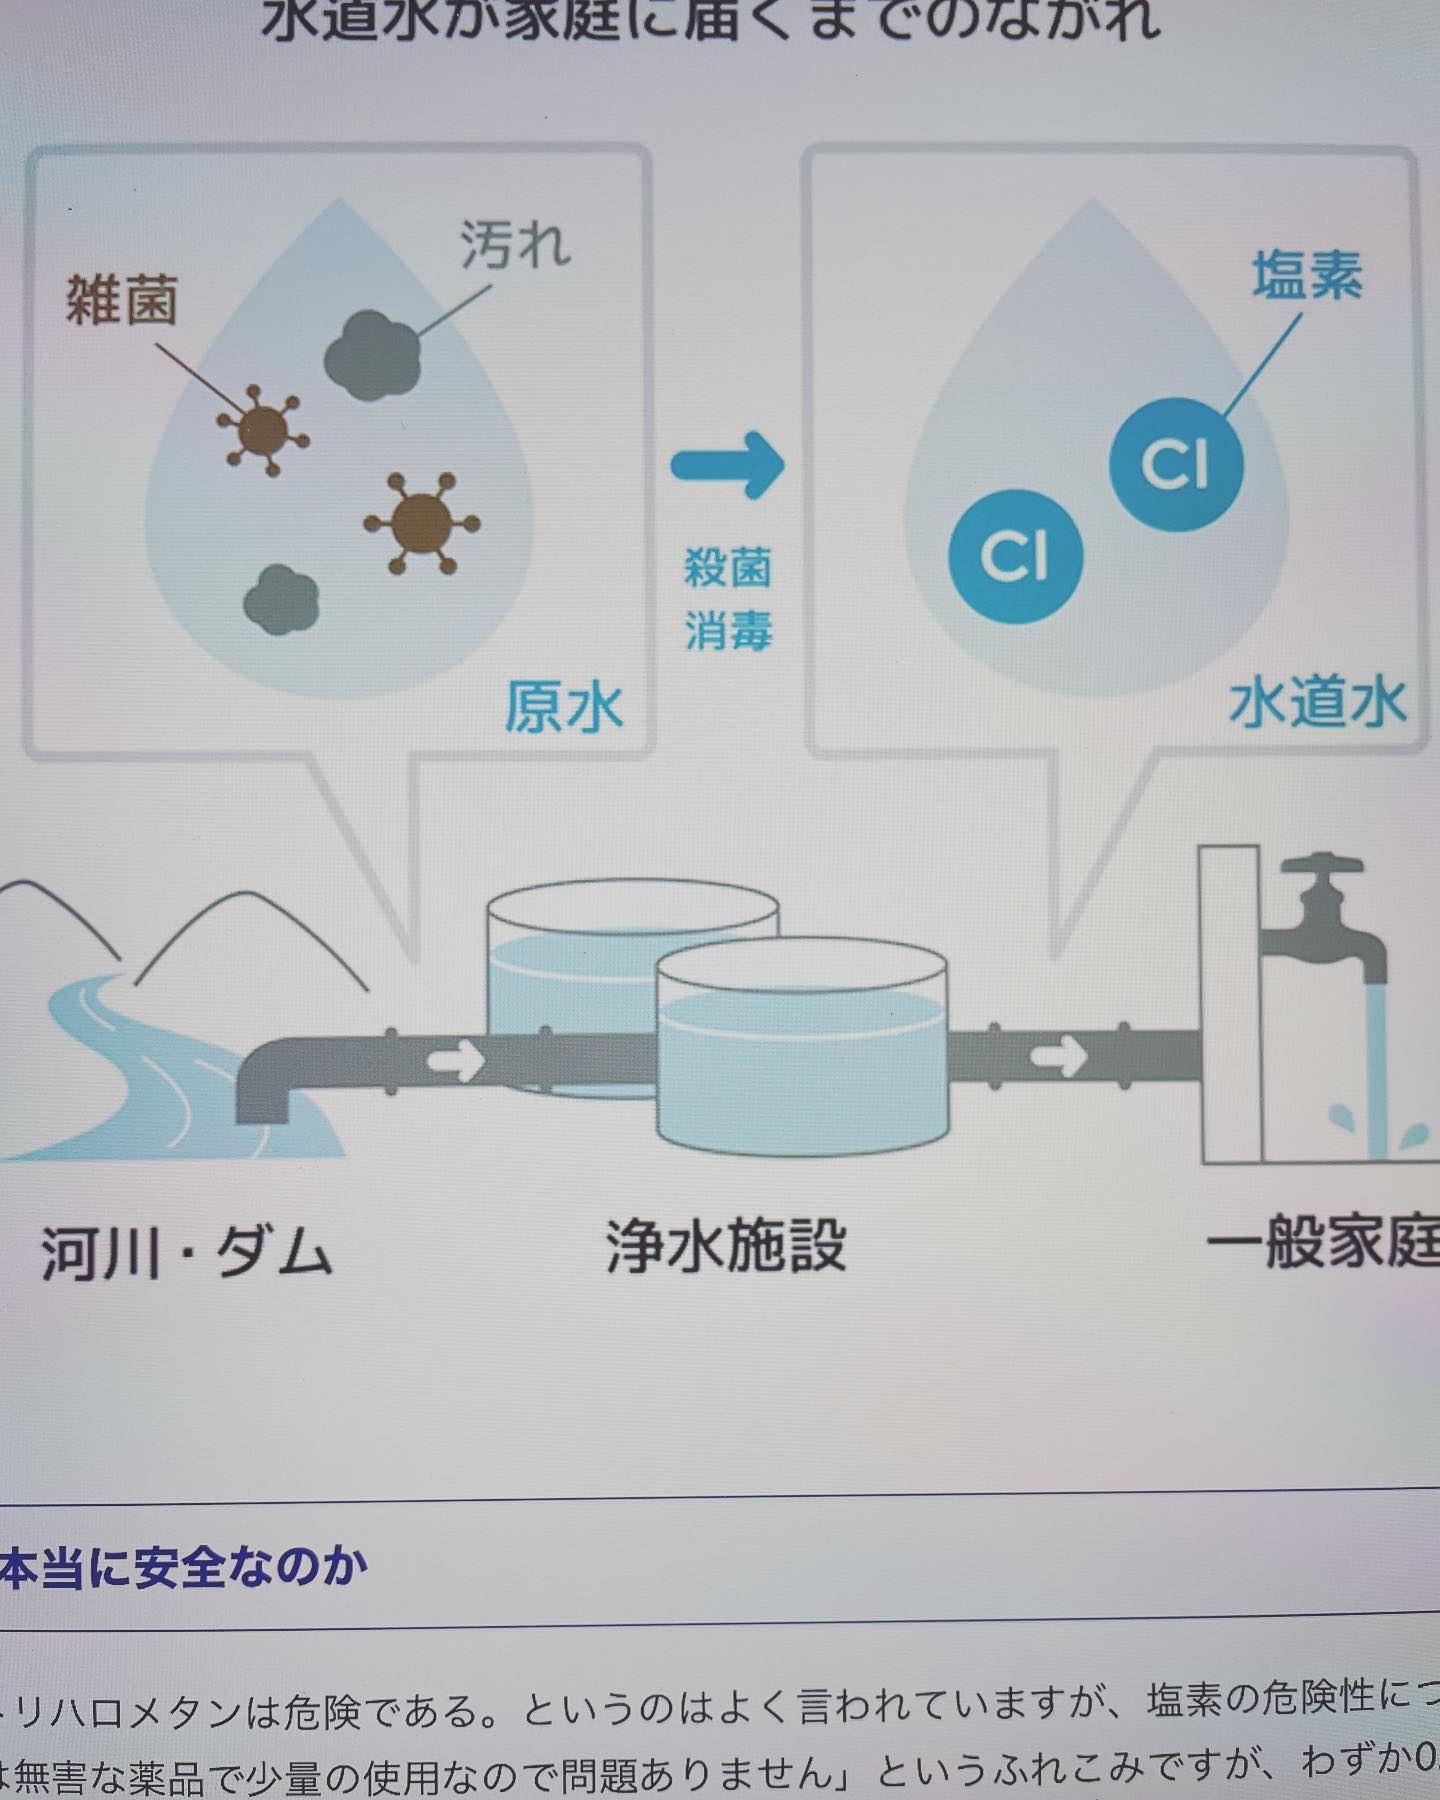 #塩素の害塩素は水道水の一部の有機物質に反応して、発がん性のあるトリハロメタンが生成されます。日本は川の水を原水することが多く、急速濾過方式といって大量の塩素と薬品によって水を浄化しています。世界でも類を見ない高濃度の塩素が水道水に含まれ、諸外国と比較して5〜15倍程度多いと考えられています。